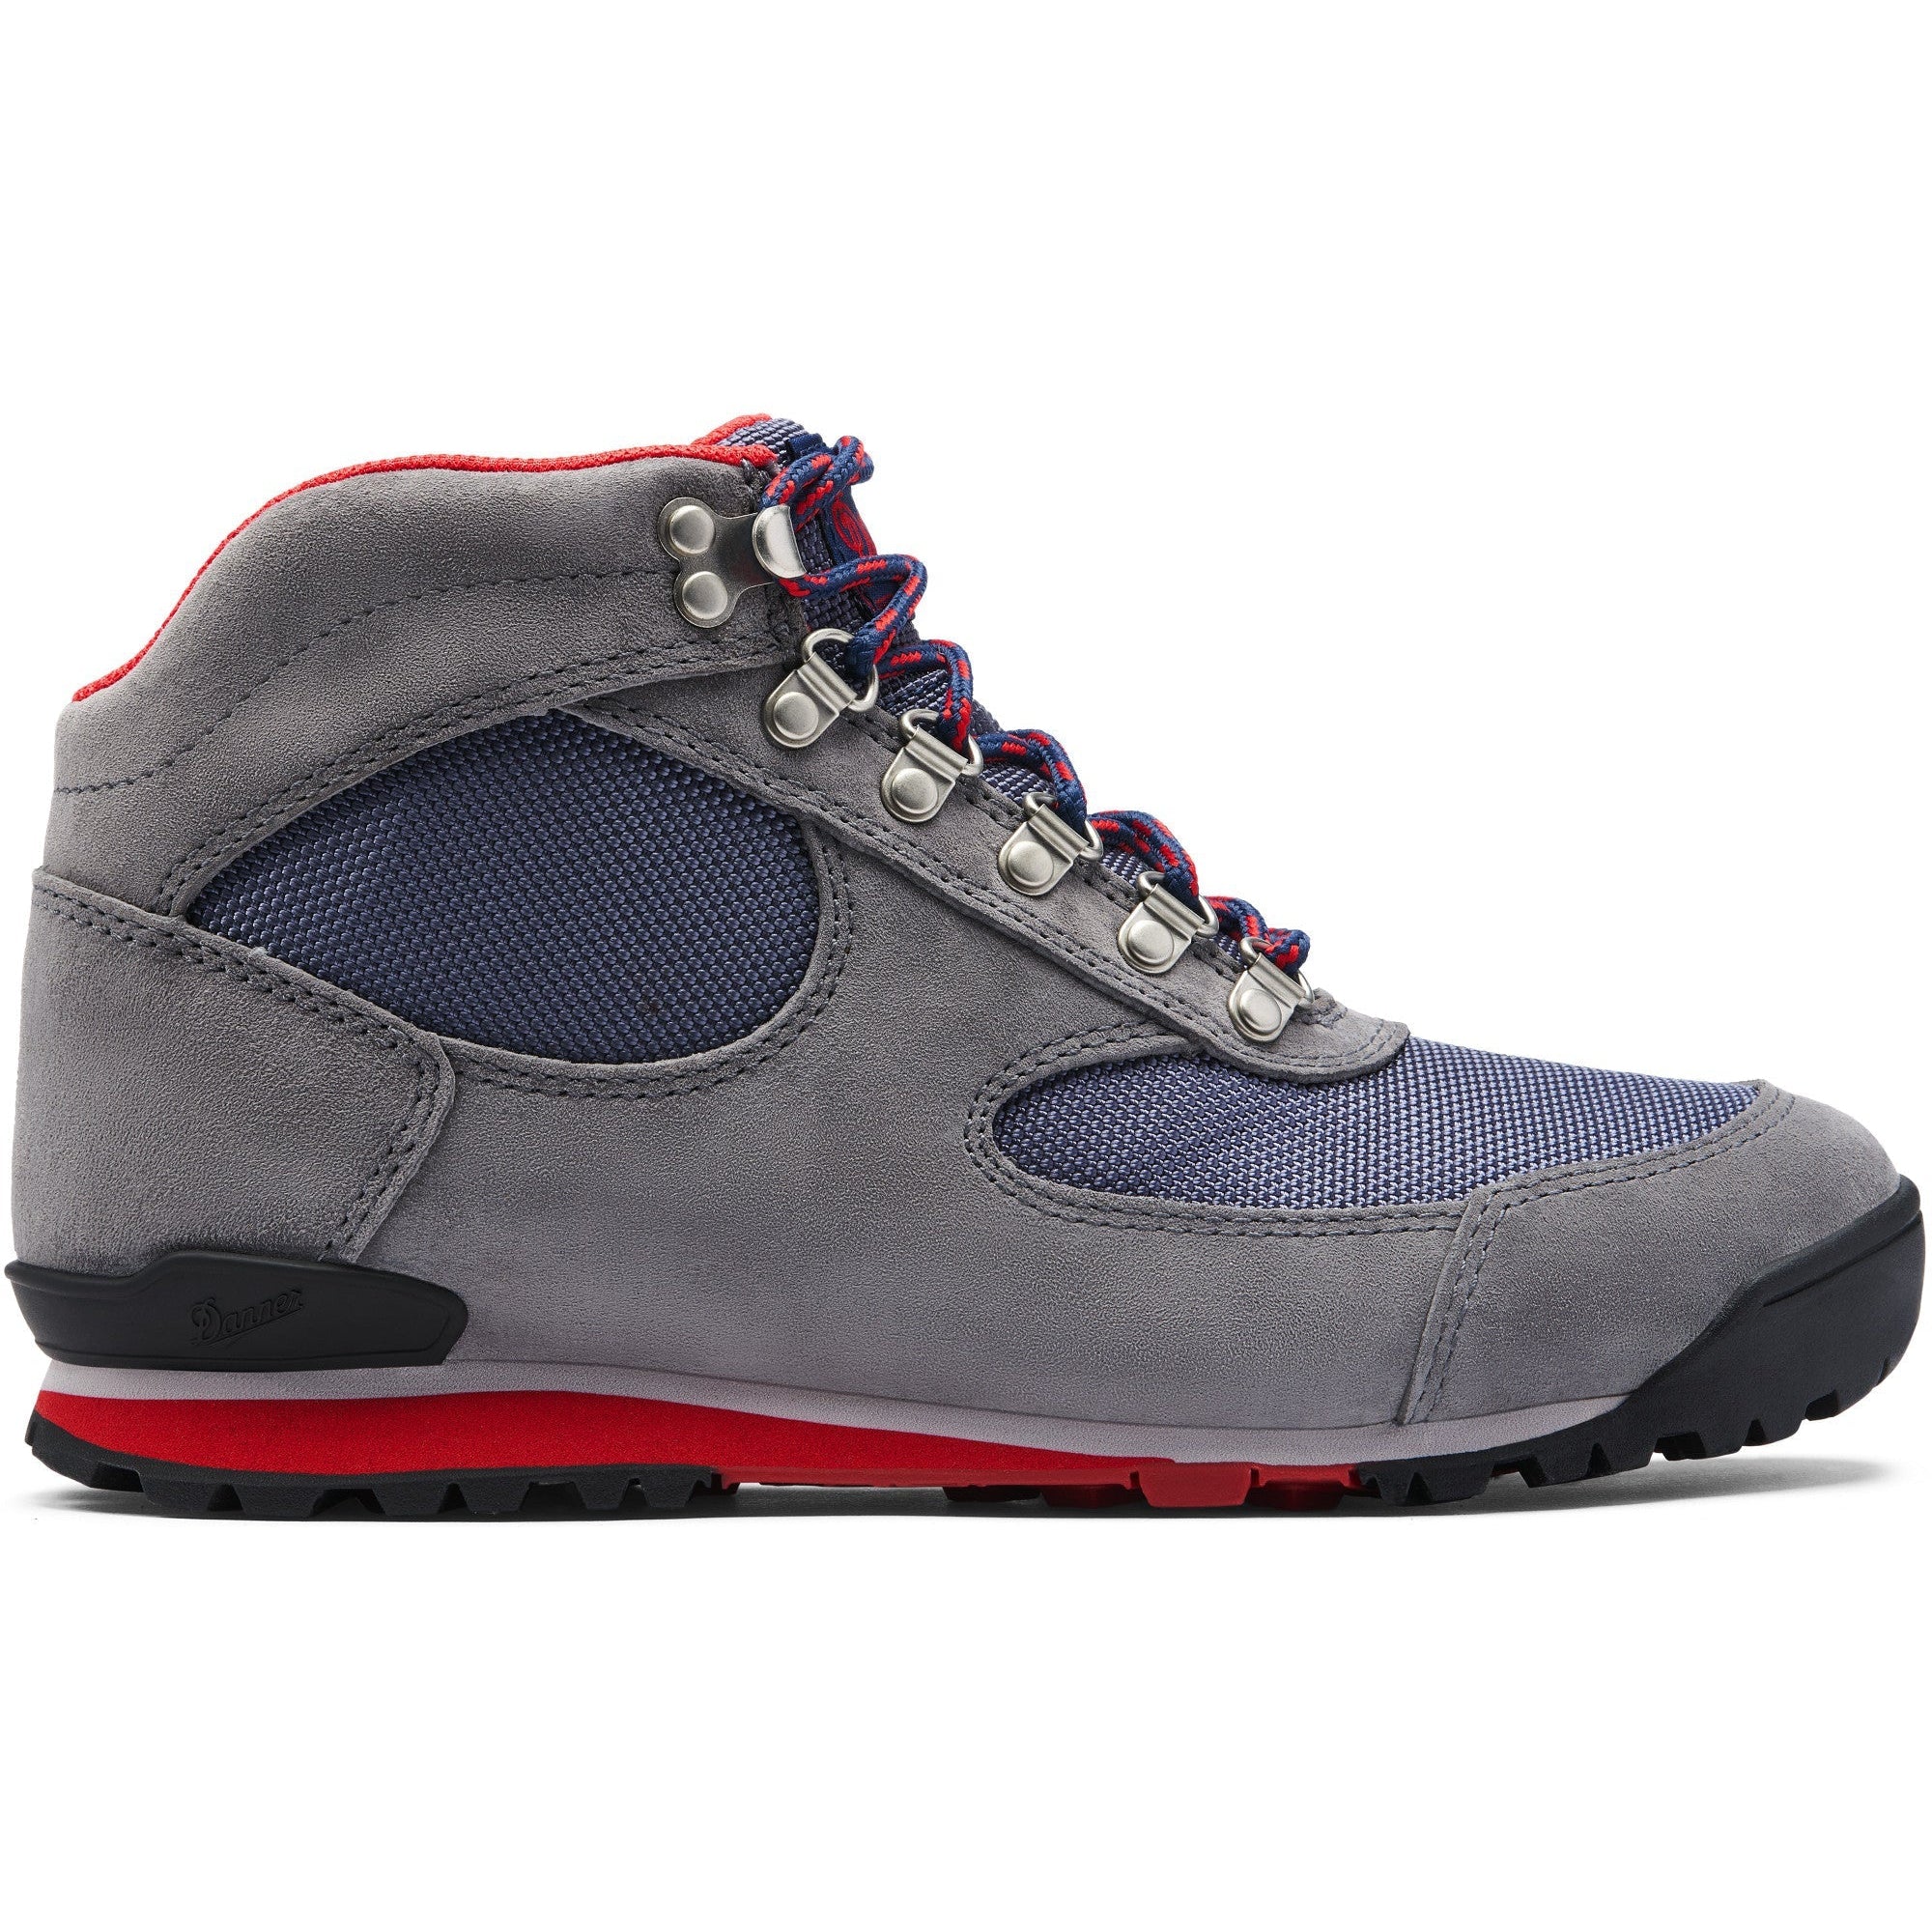 Danner Women's Jag 4.5" WP Hiking Boot - Steel Gray - 37356  - Overlook Boots